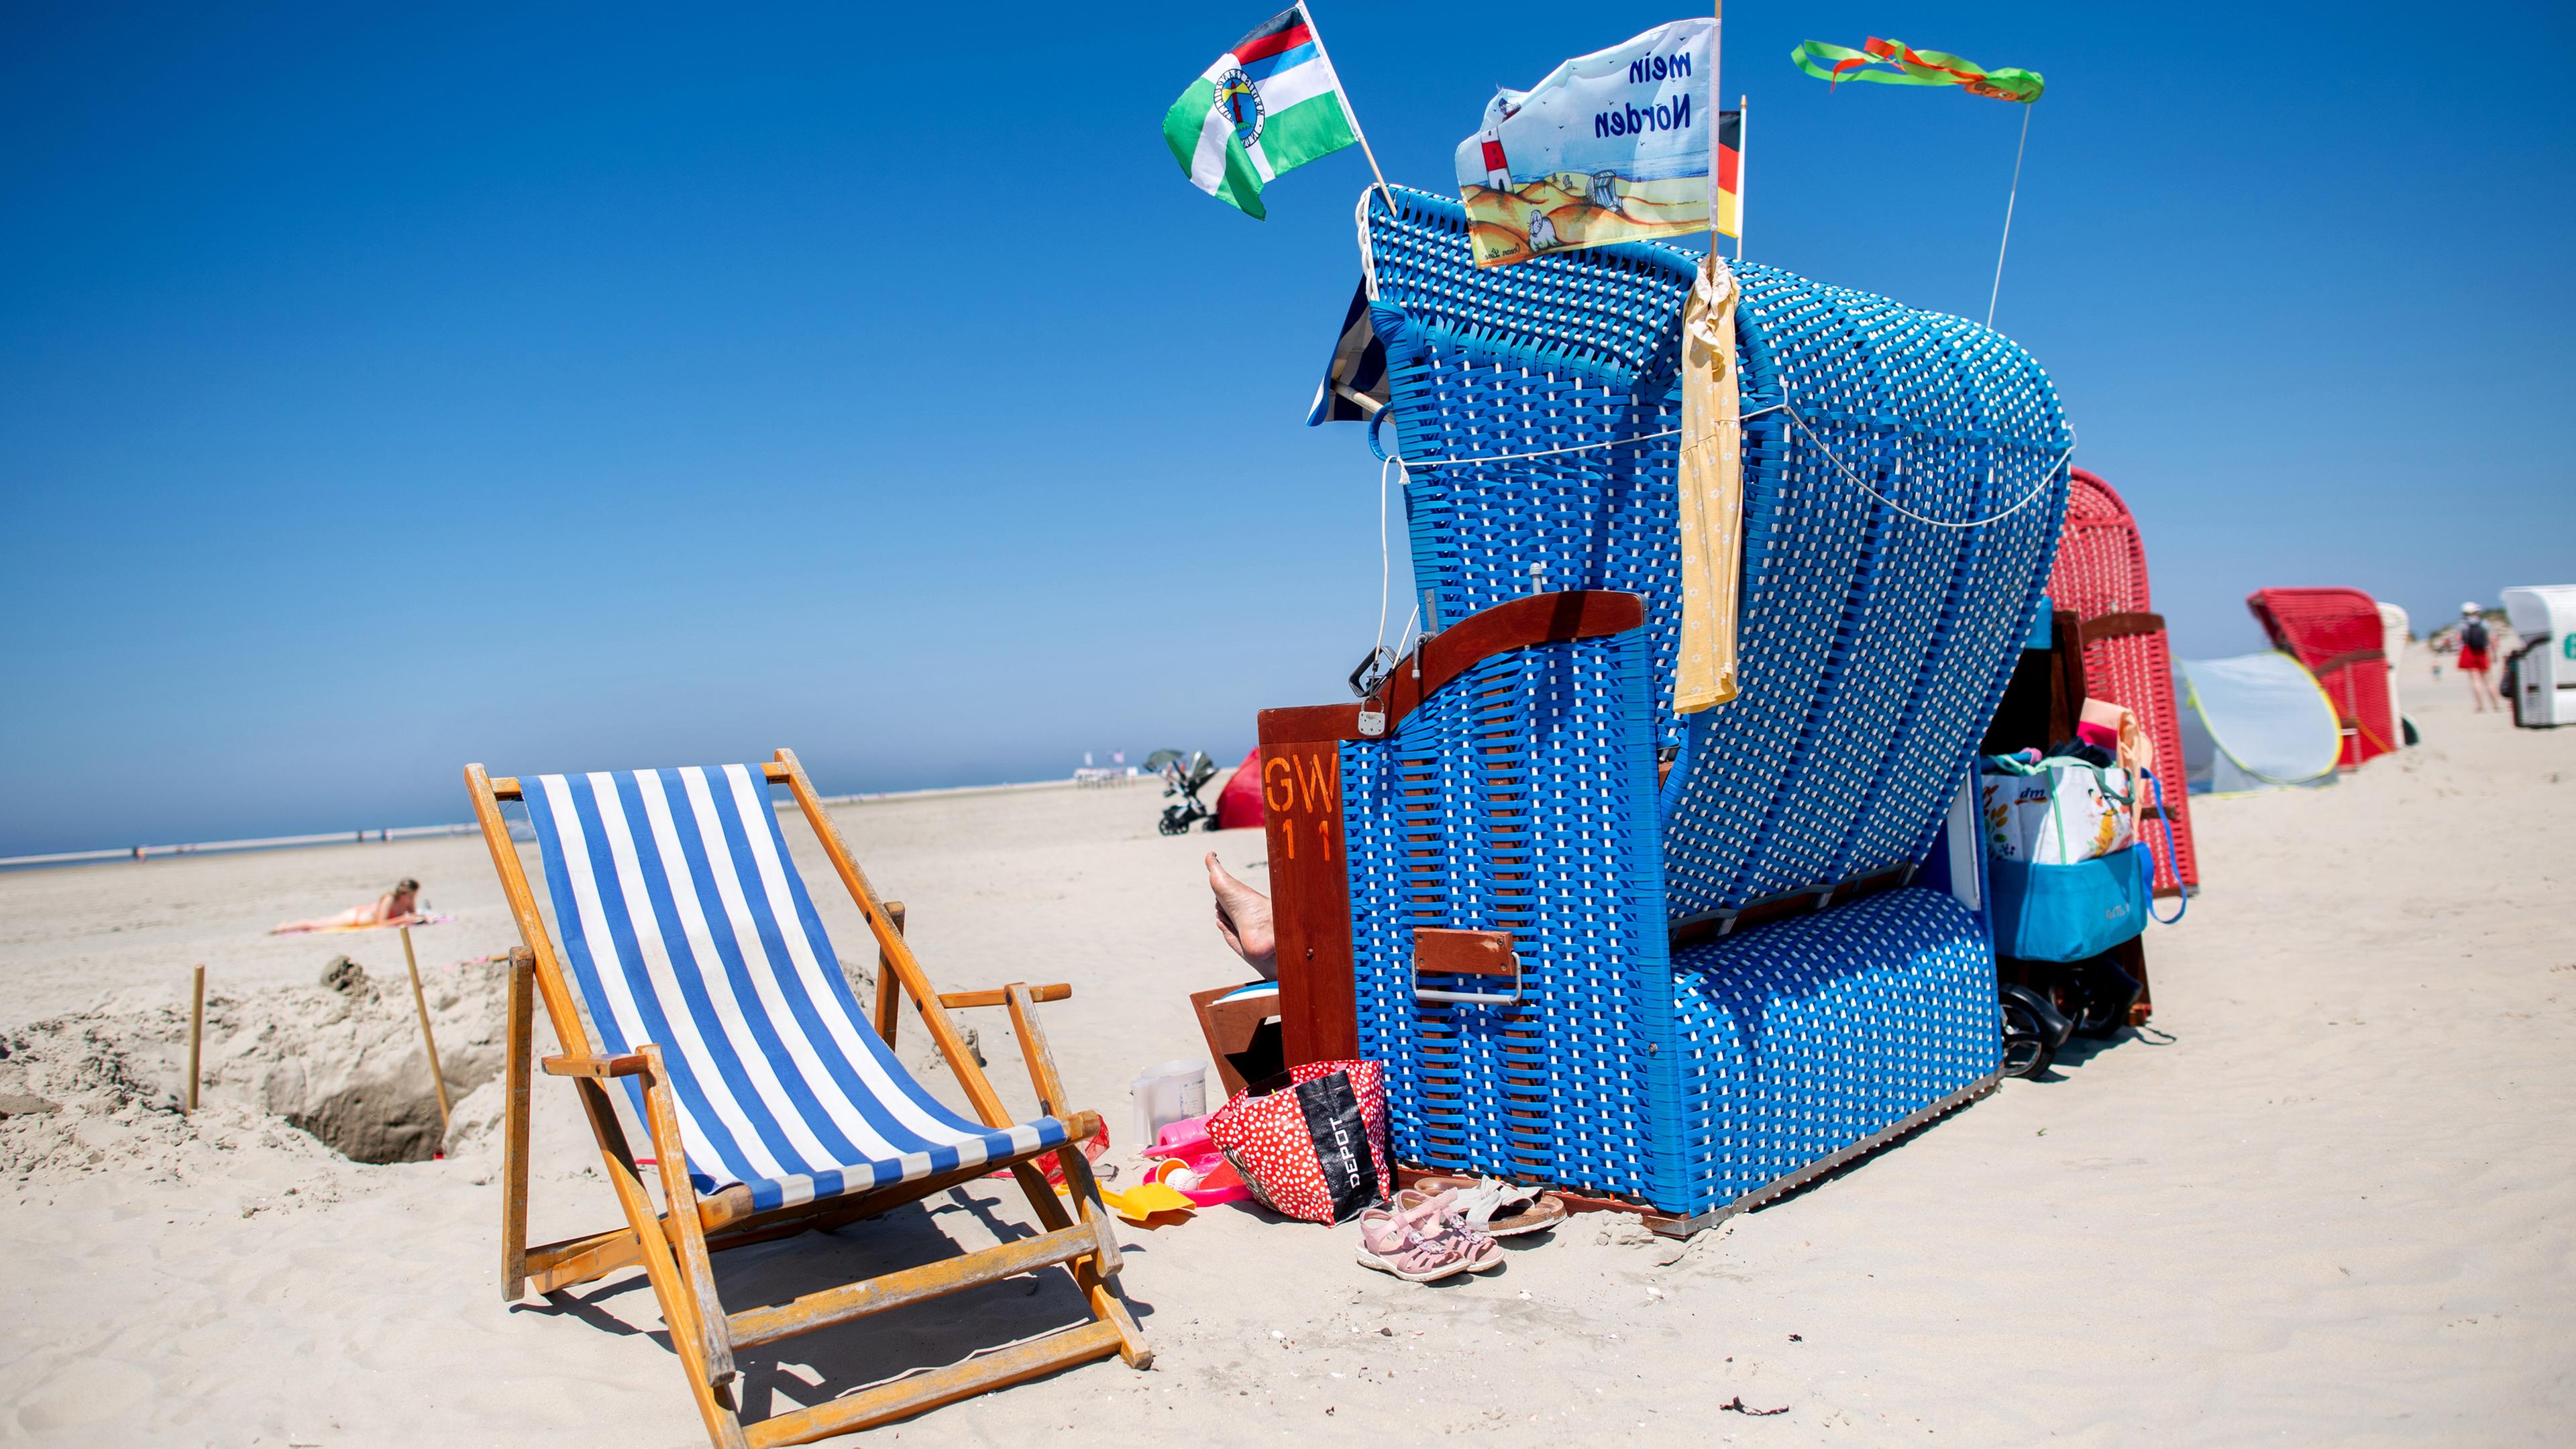 Ein blauer Strandkorb steht neben einem gestreiften Liegestuhl am Strand auf Borkum.